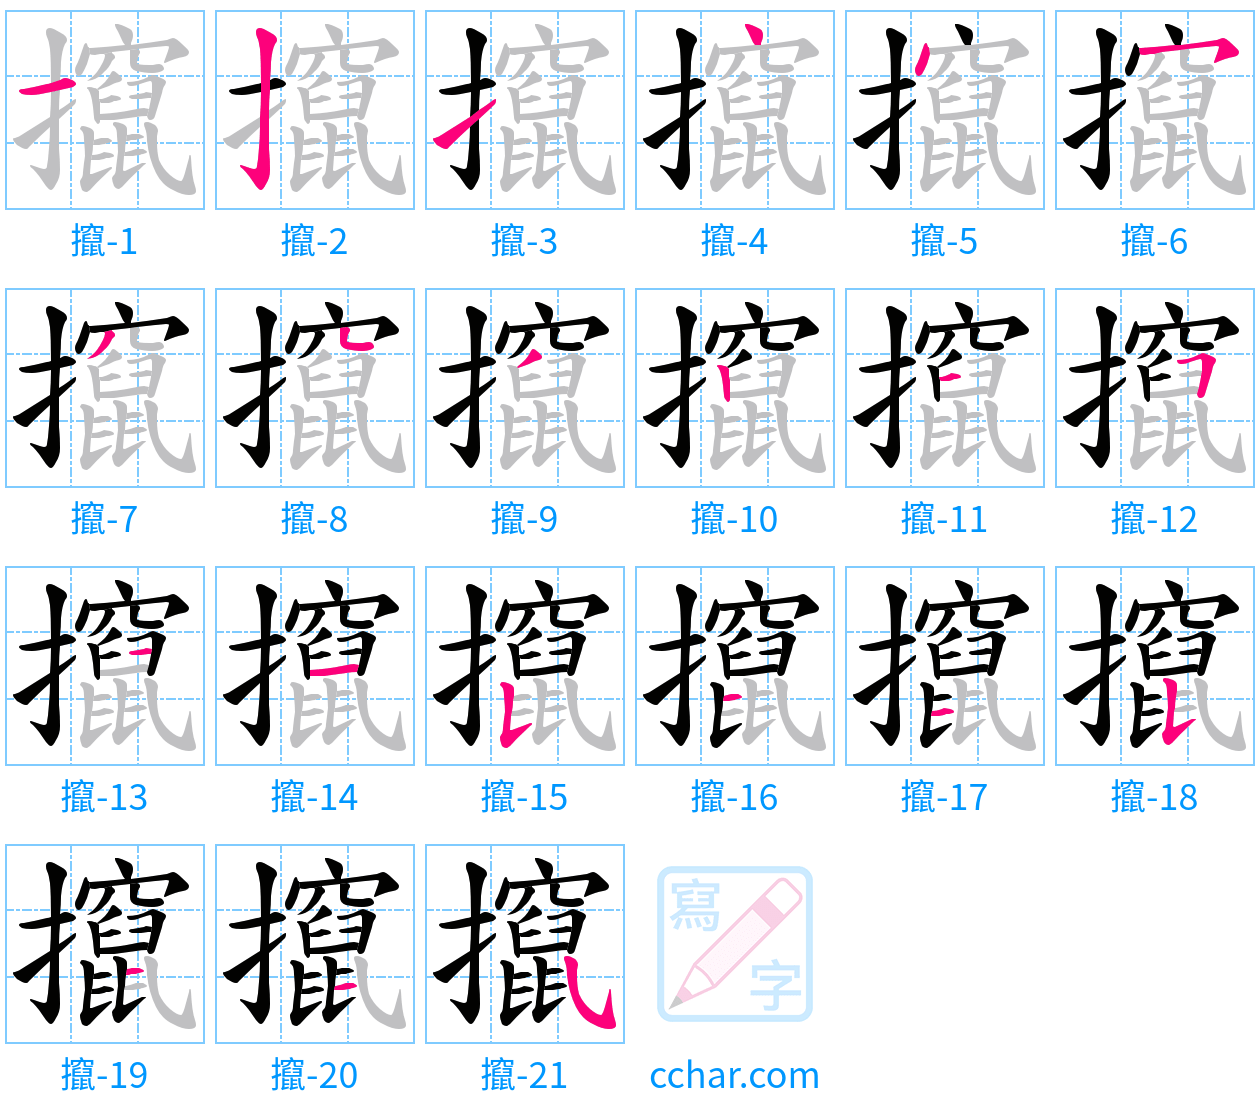 攛 stroke order step-by-step diagram